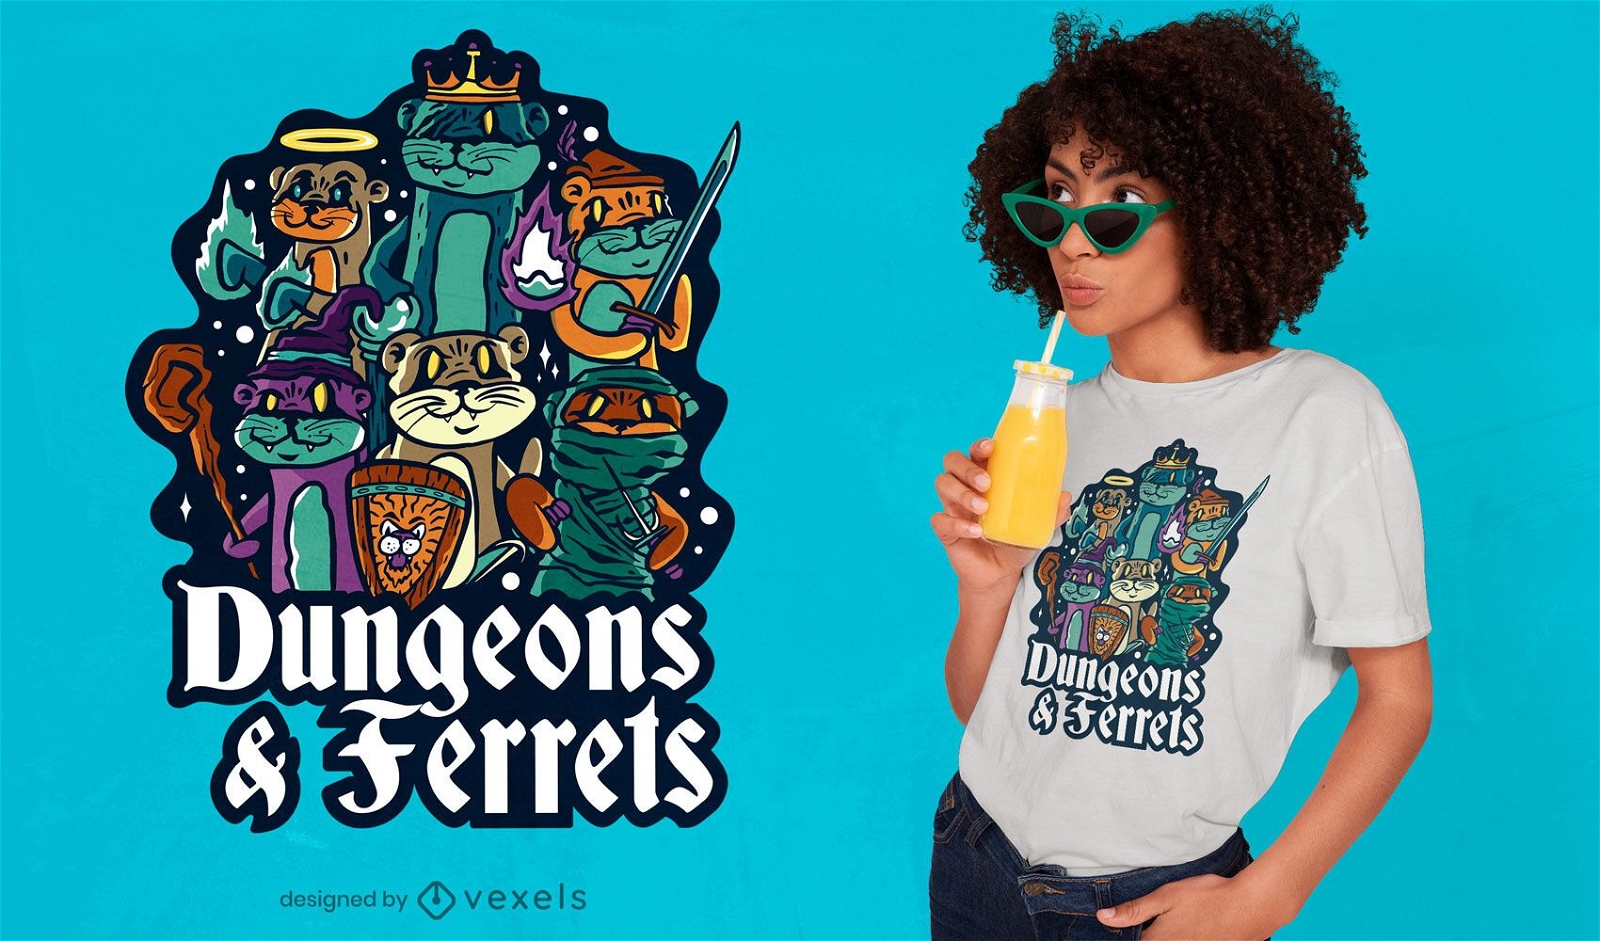 Dungeon ferrets t-shirt design